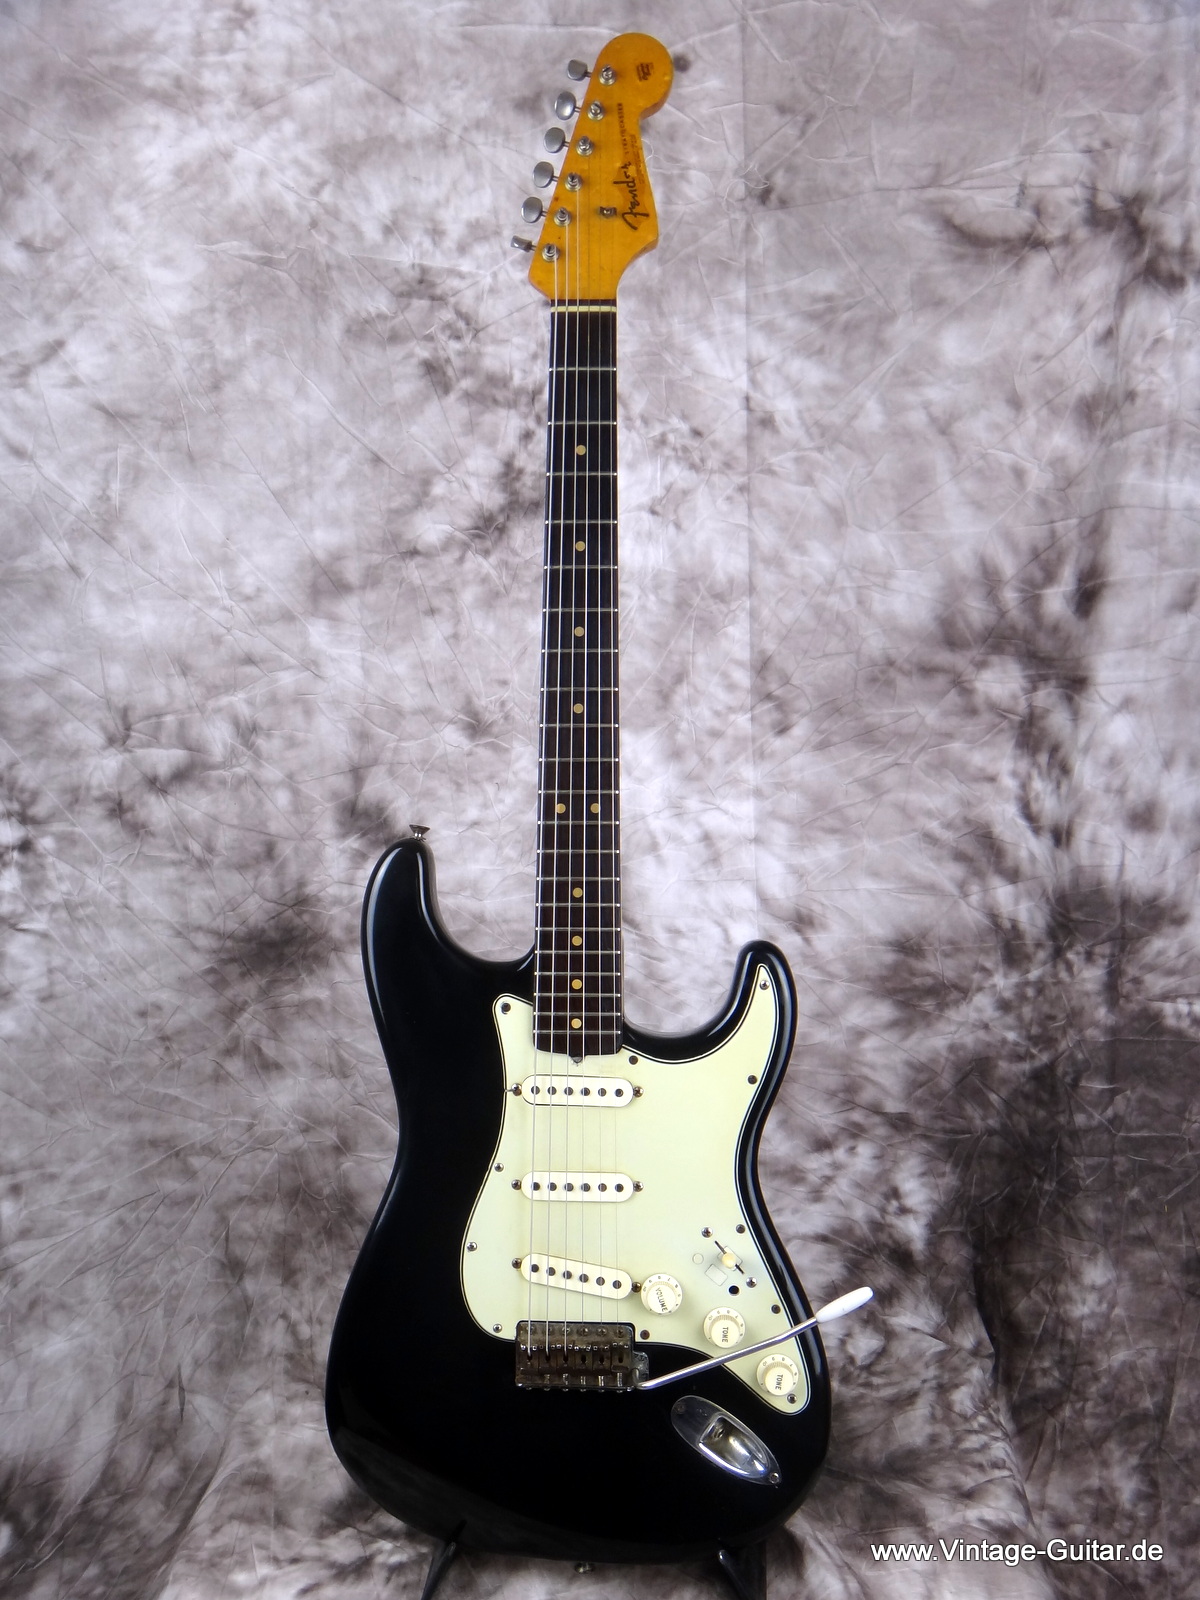 Fender_Stratocaster-black_refinish-1964-001.JPG